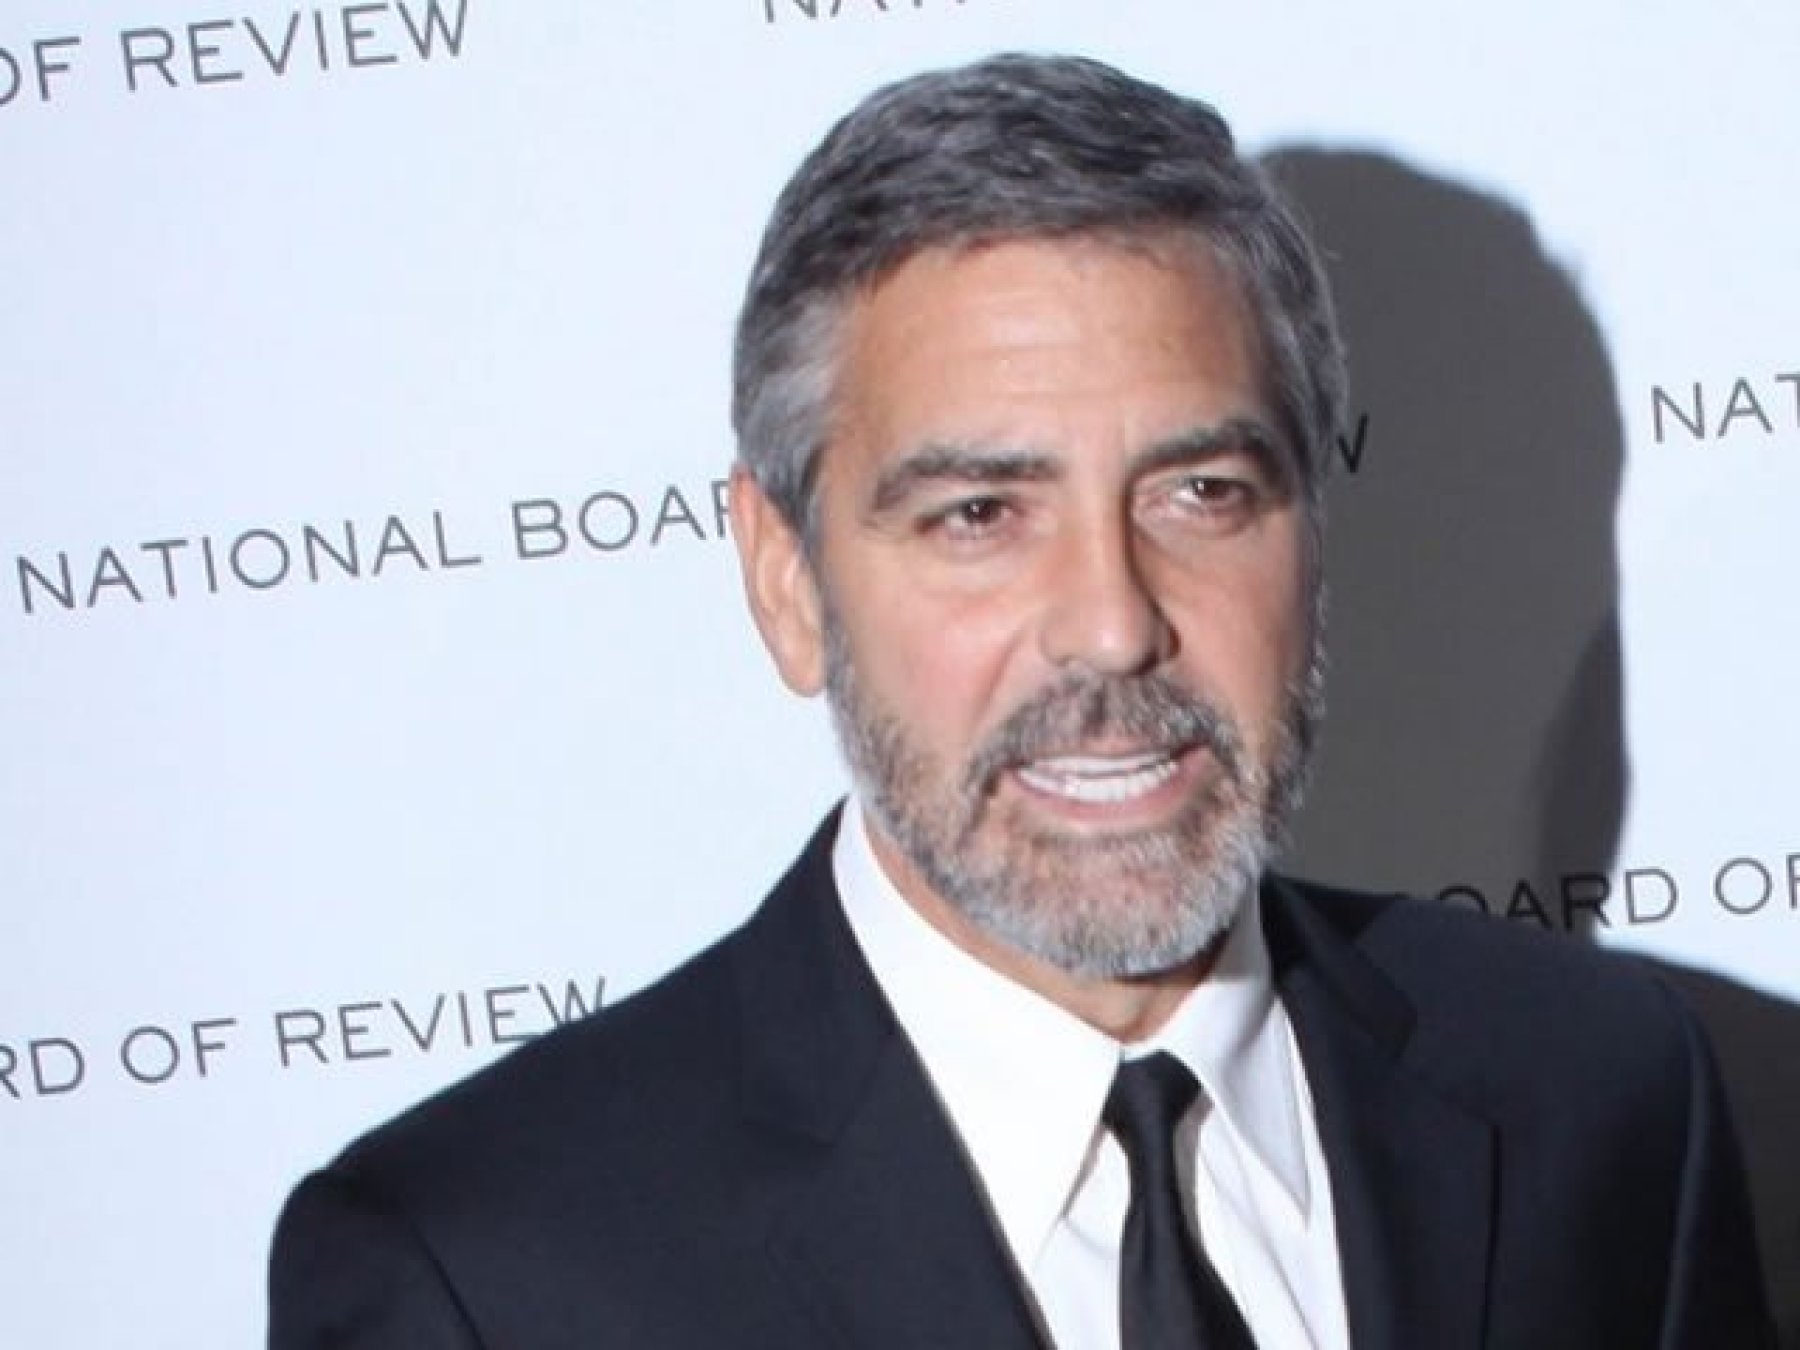 Vinculan imagen de George Clooney a explotación, él y la marca responden